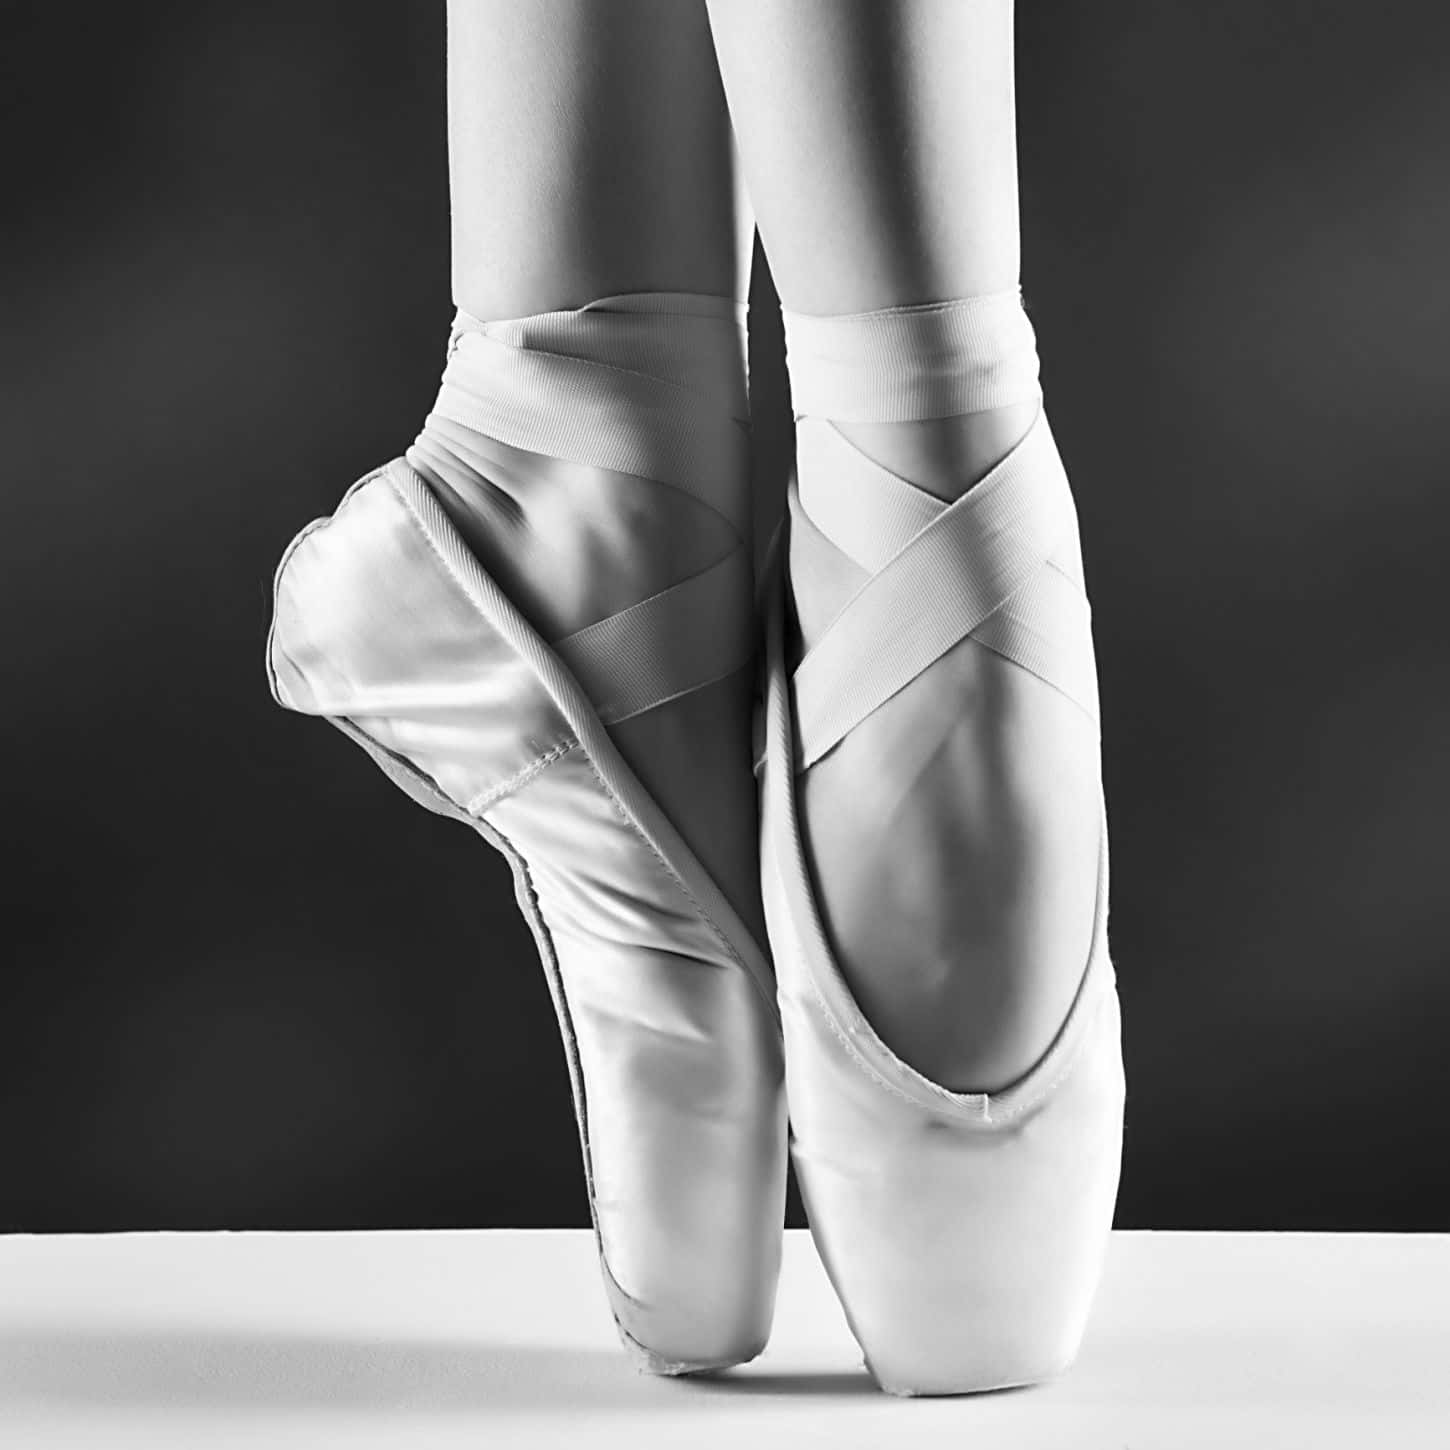 Assapatilhas De Ballet De Uma Mulher São Mostradas Em Preto E Branco. Papel de Parede